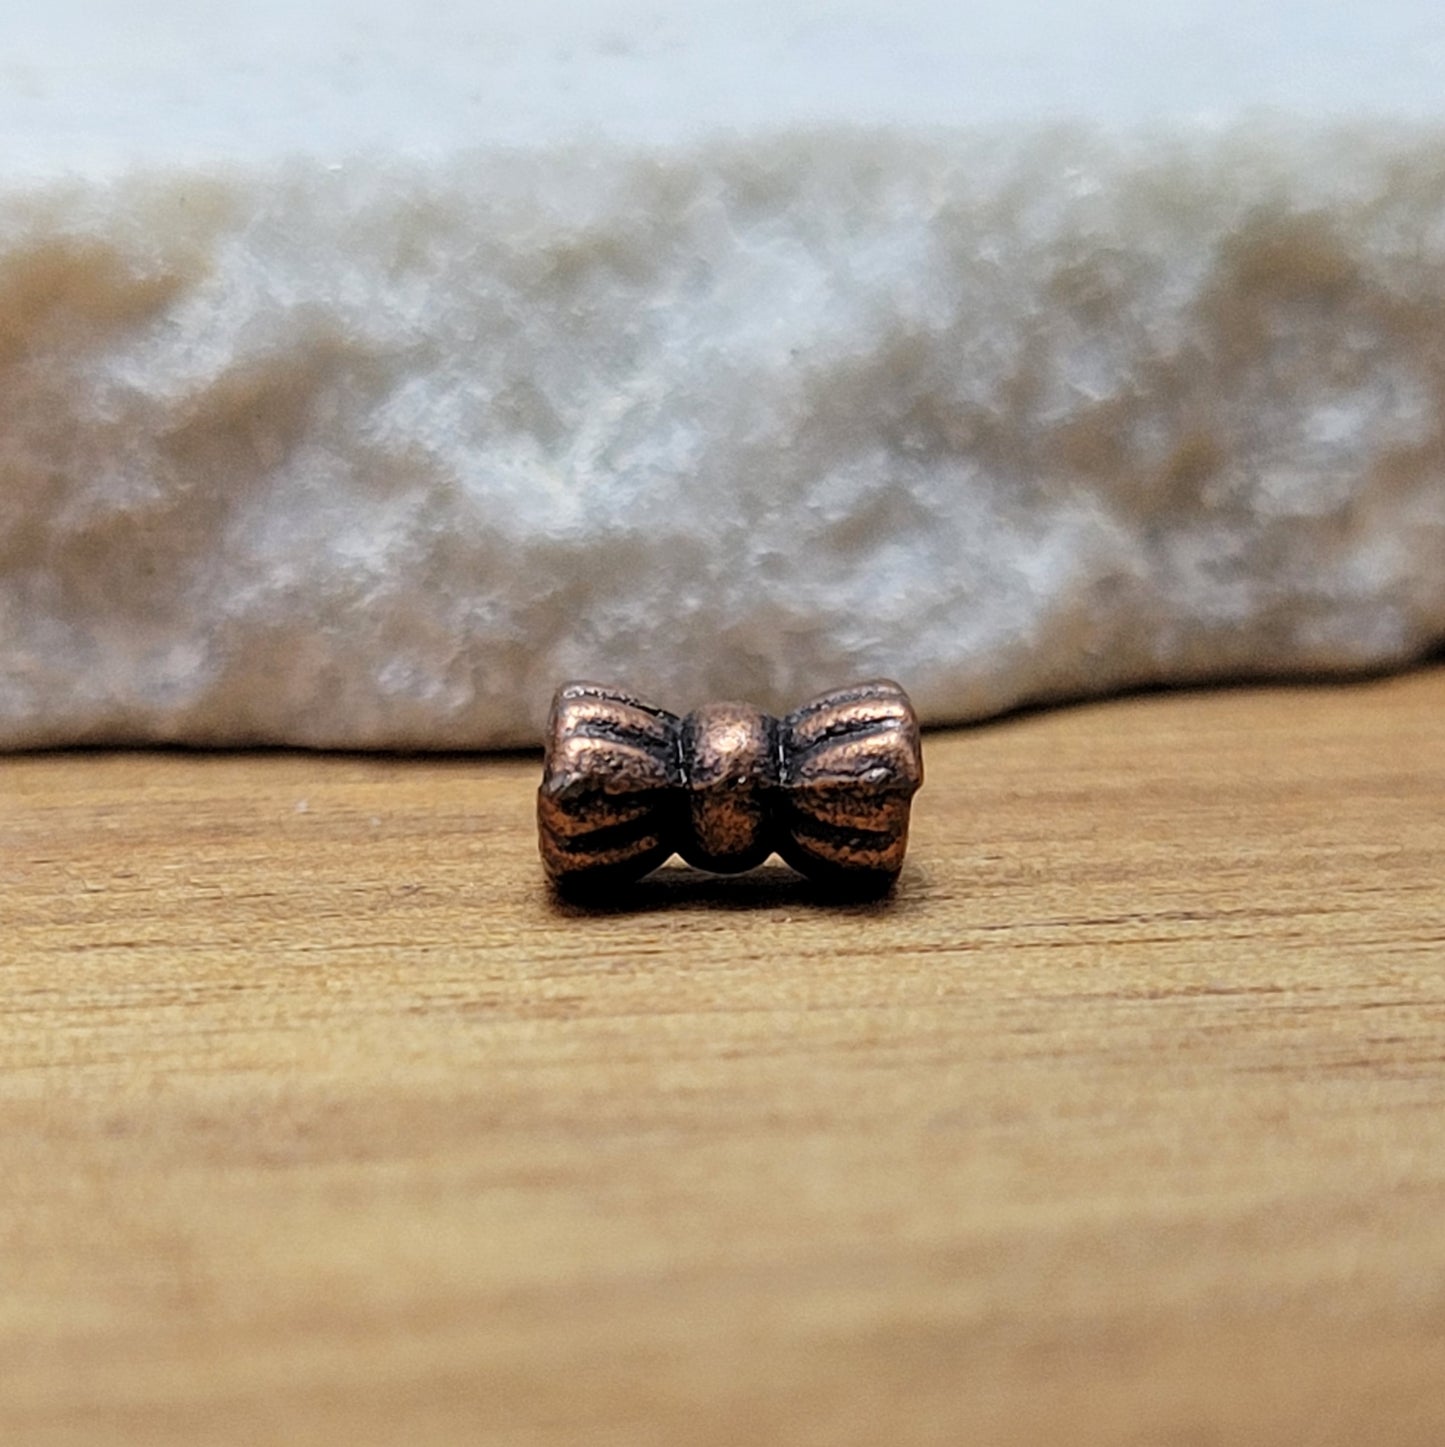 Diese Packung enthält 10 kleine Metallperlen in antik kupferfarbig.  Die Perlen haben die Form eines kleinen aufgeplusterten Schleifchens. Das Fädelloch der Perlen verläuft durch den langen Teil der Perle.